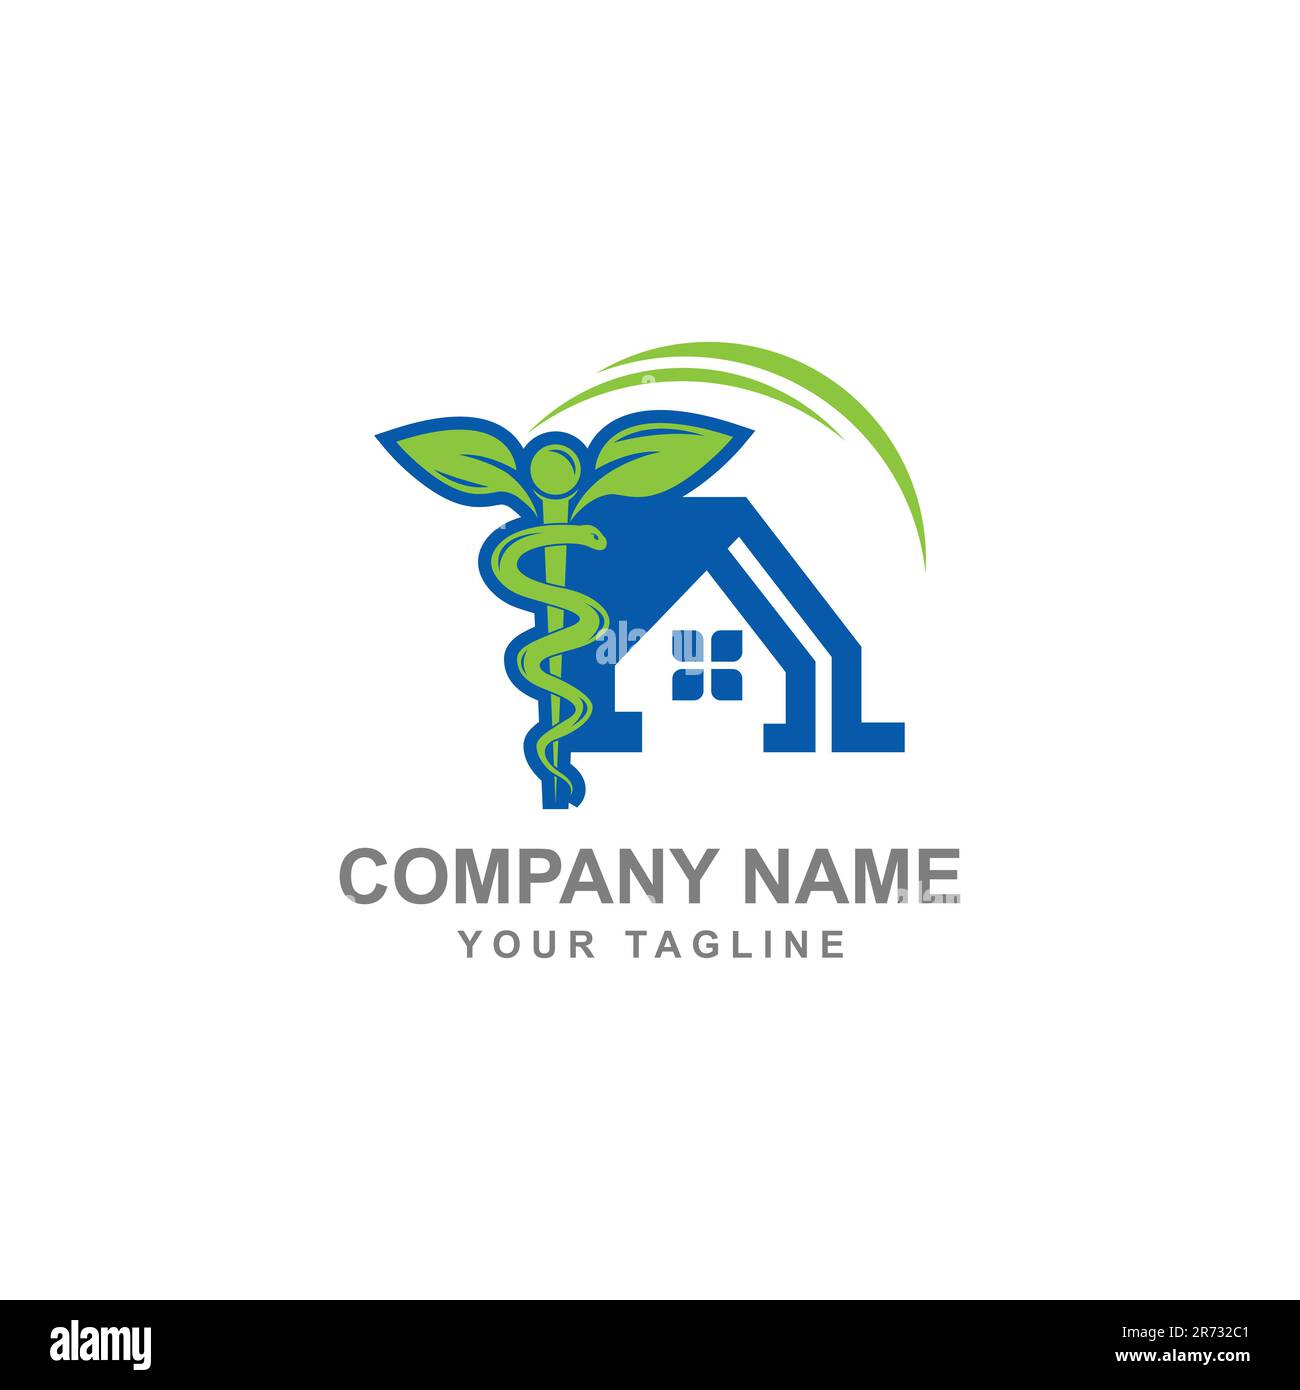 Medic House Logo Template Design Vector.EPS 10 Stock Vector